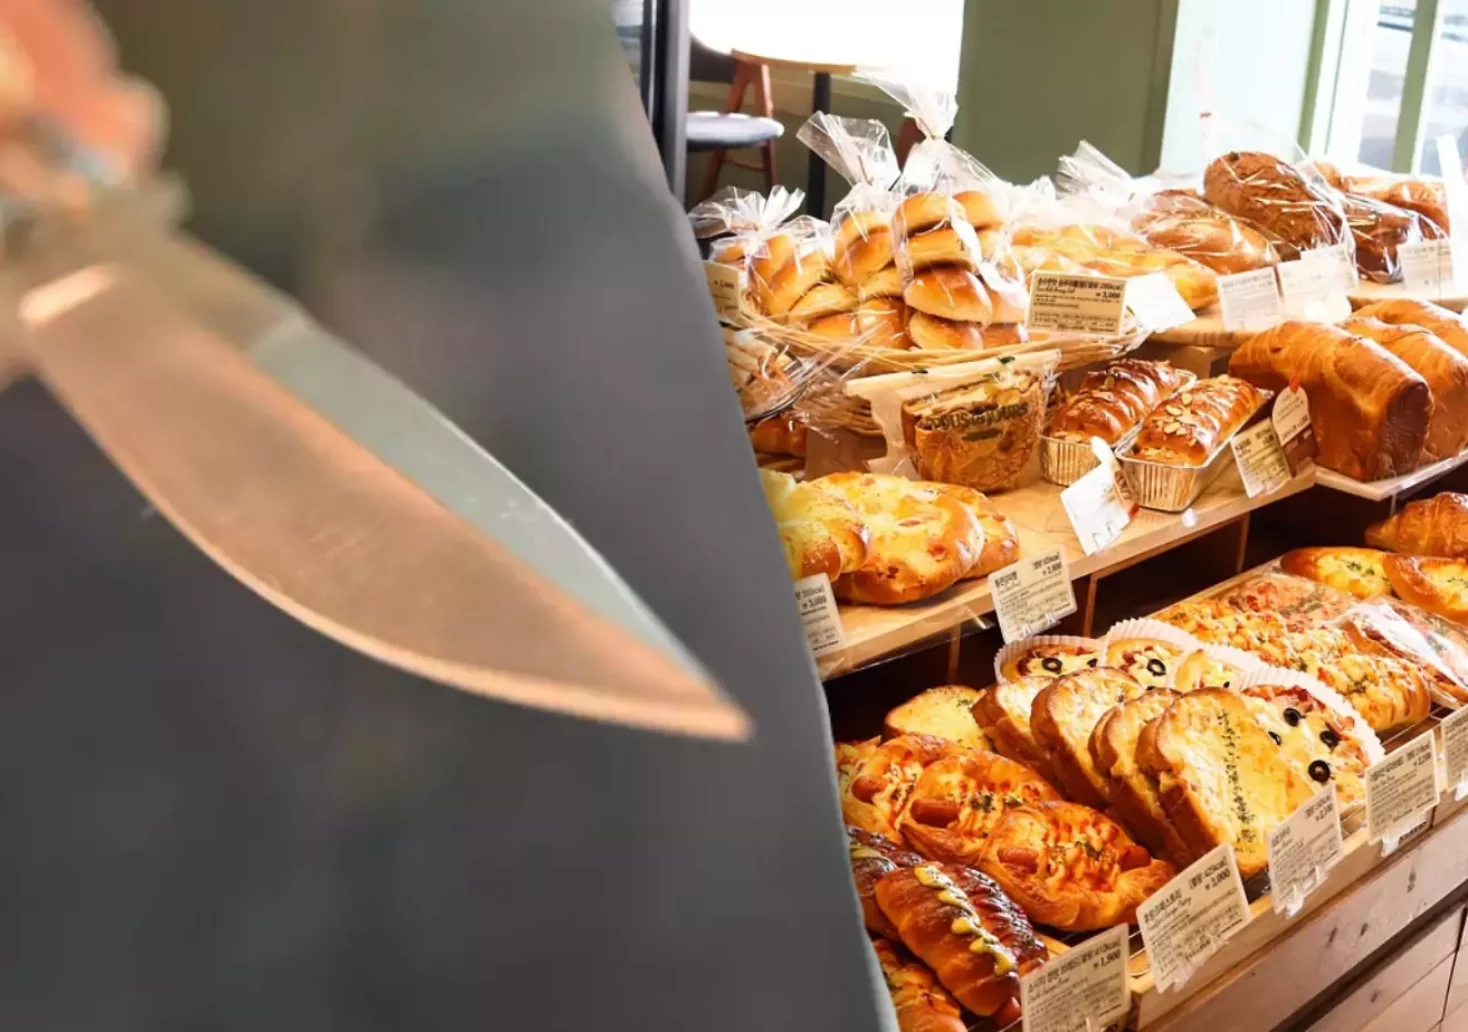 Messerstecherei in Bäckerei: Verdächtiger festgenommen